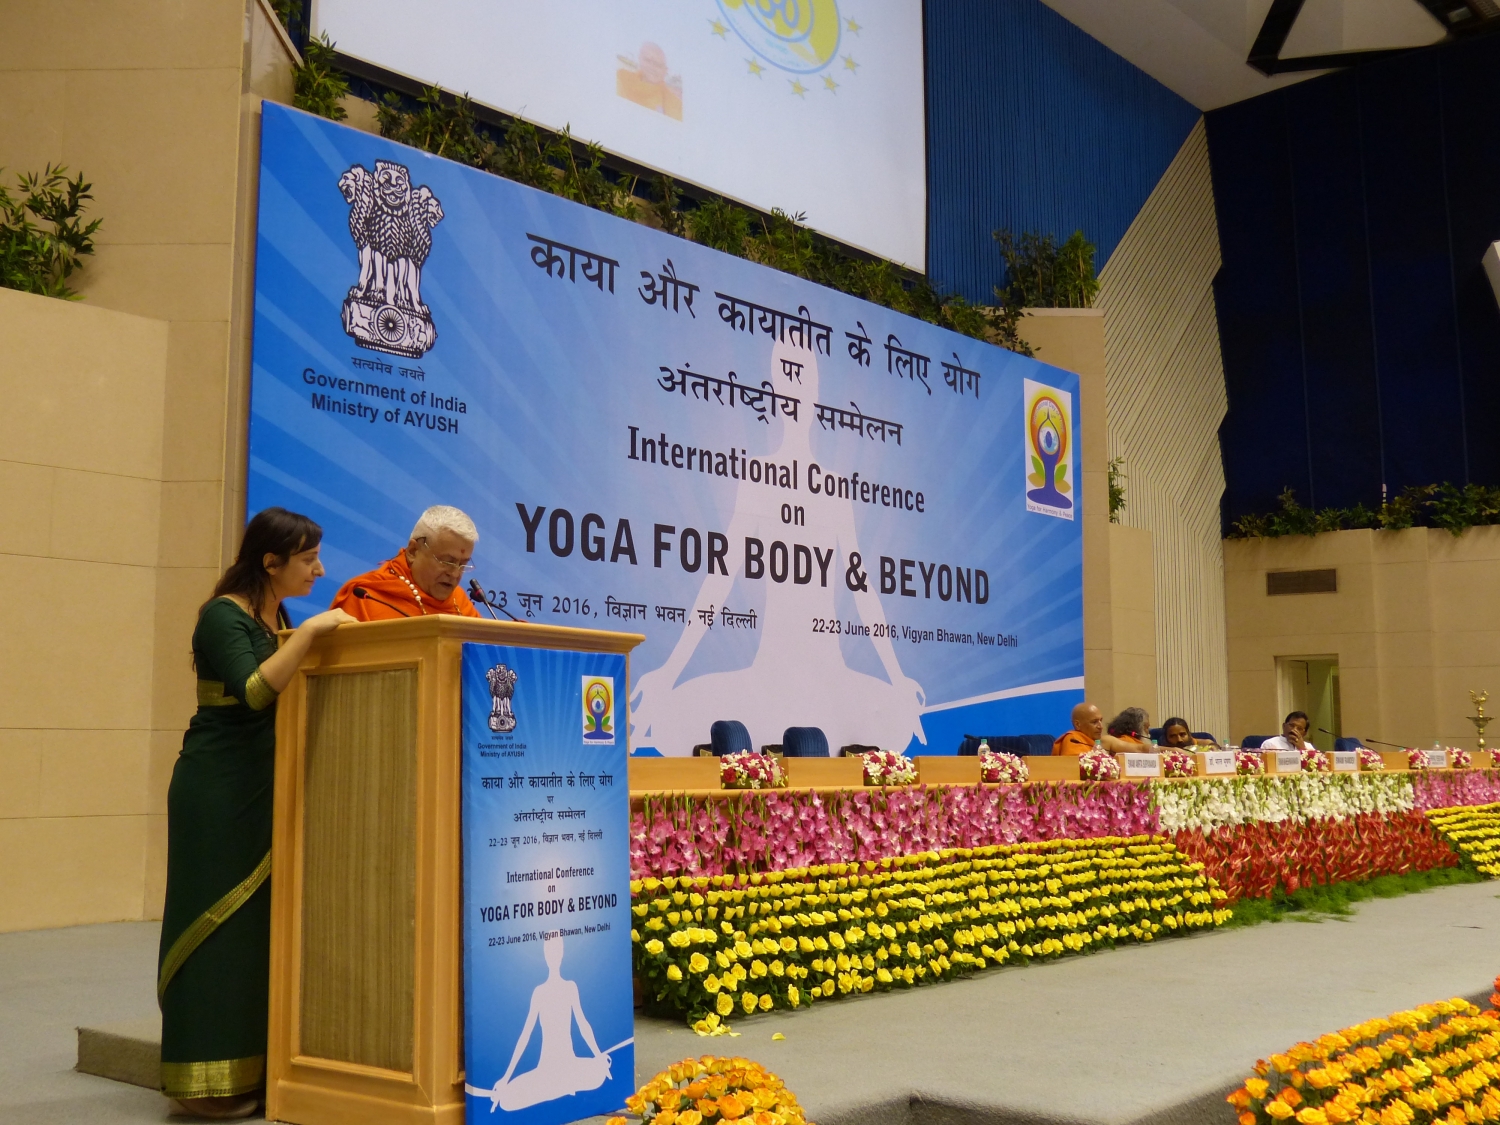 International Day of Yoga / IDY 2016 - International Conference - New Dillí, Índia - 2016, Junho 22 e 23